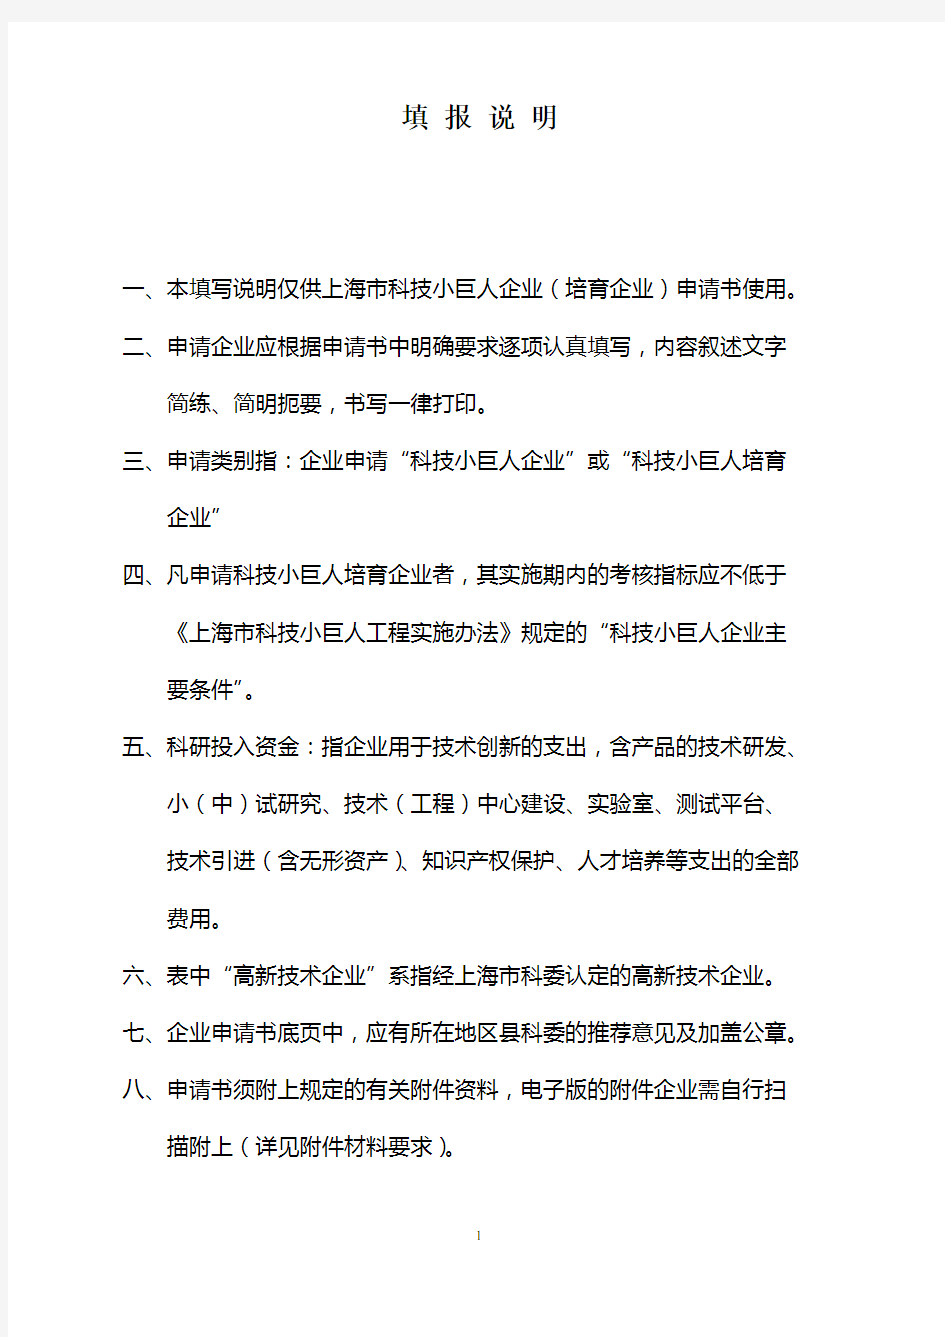 上海科技小巨人企业(含培育)申请书